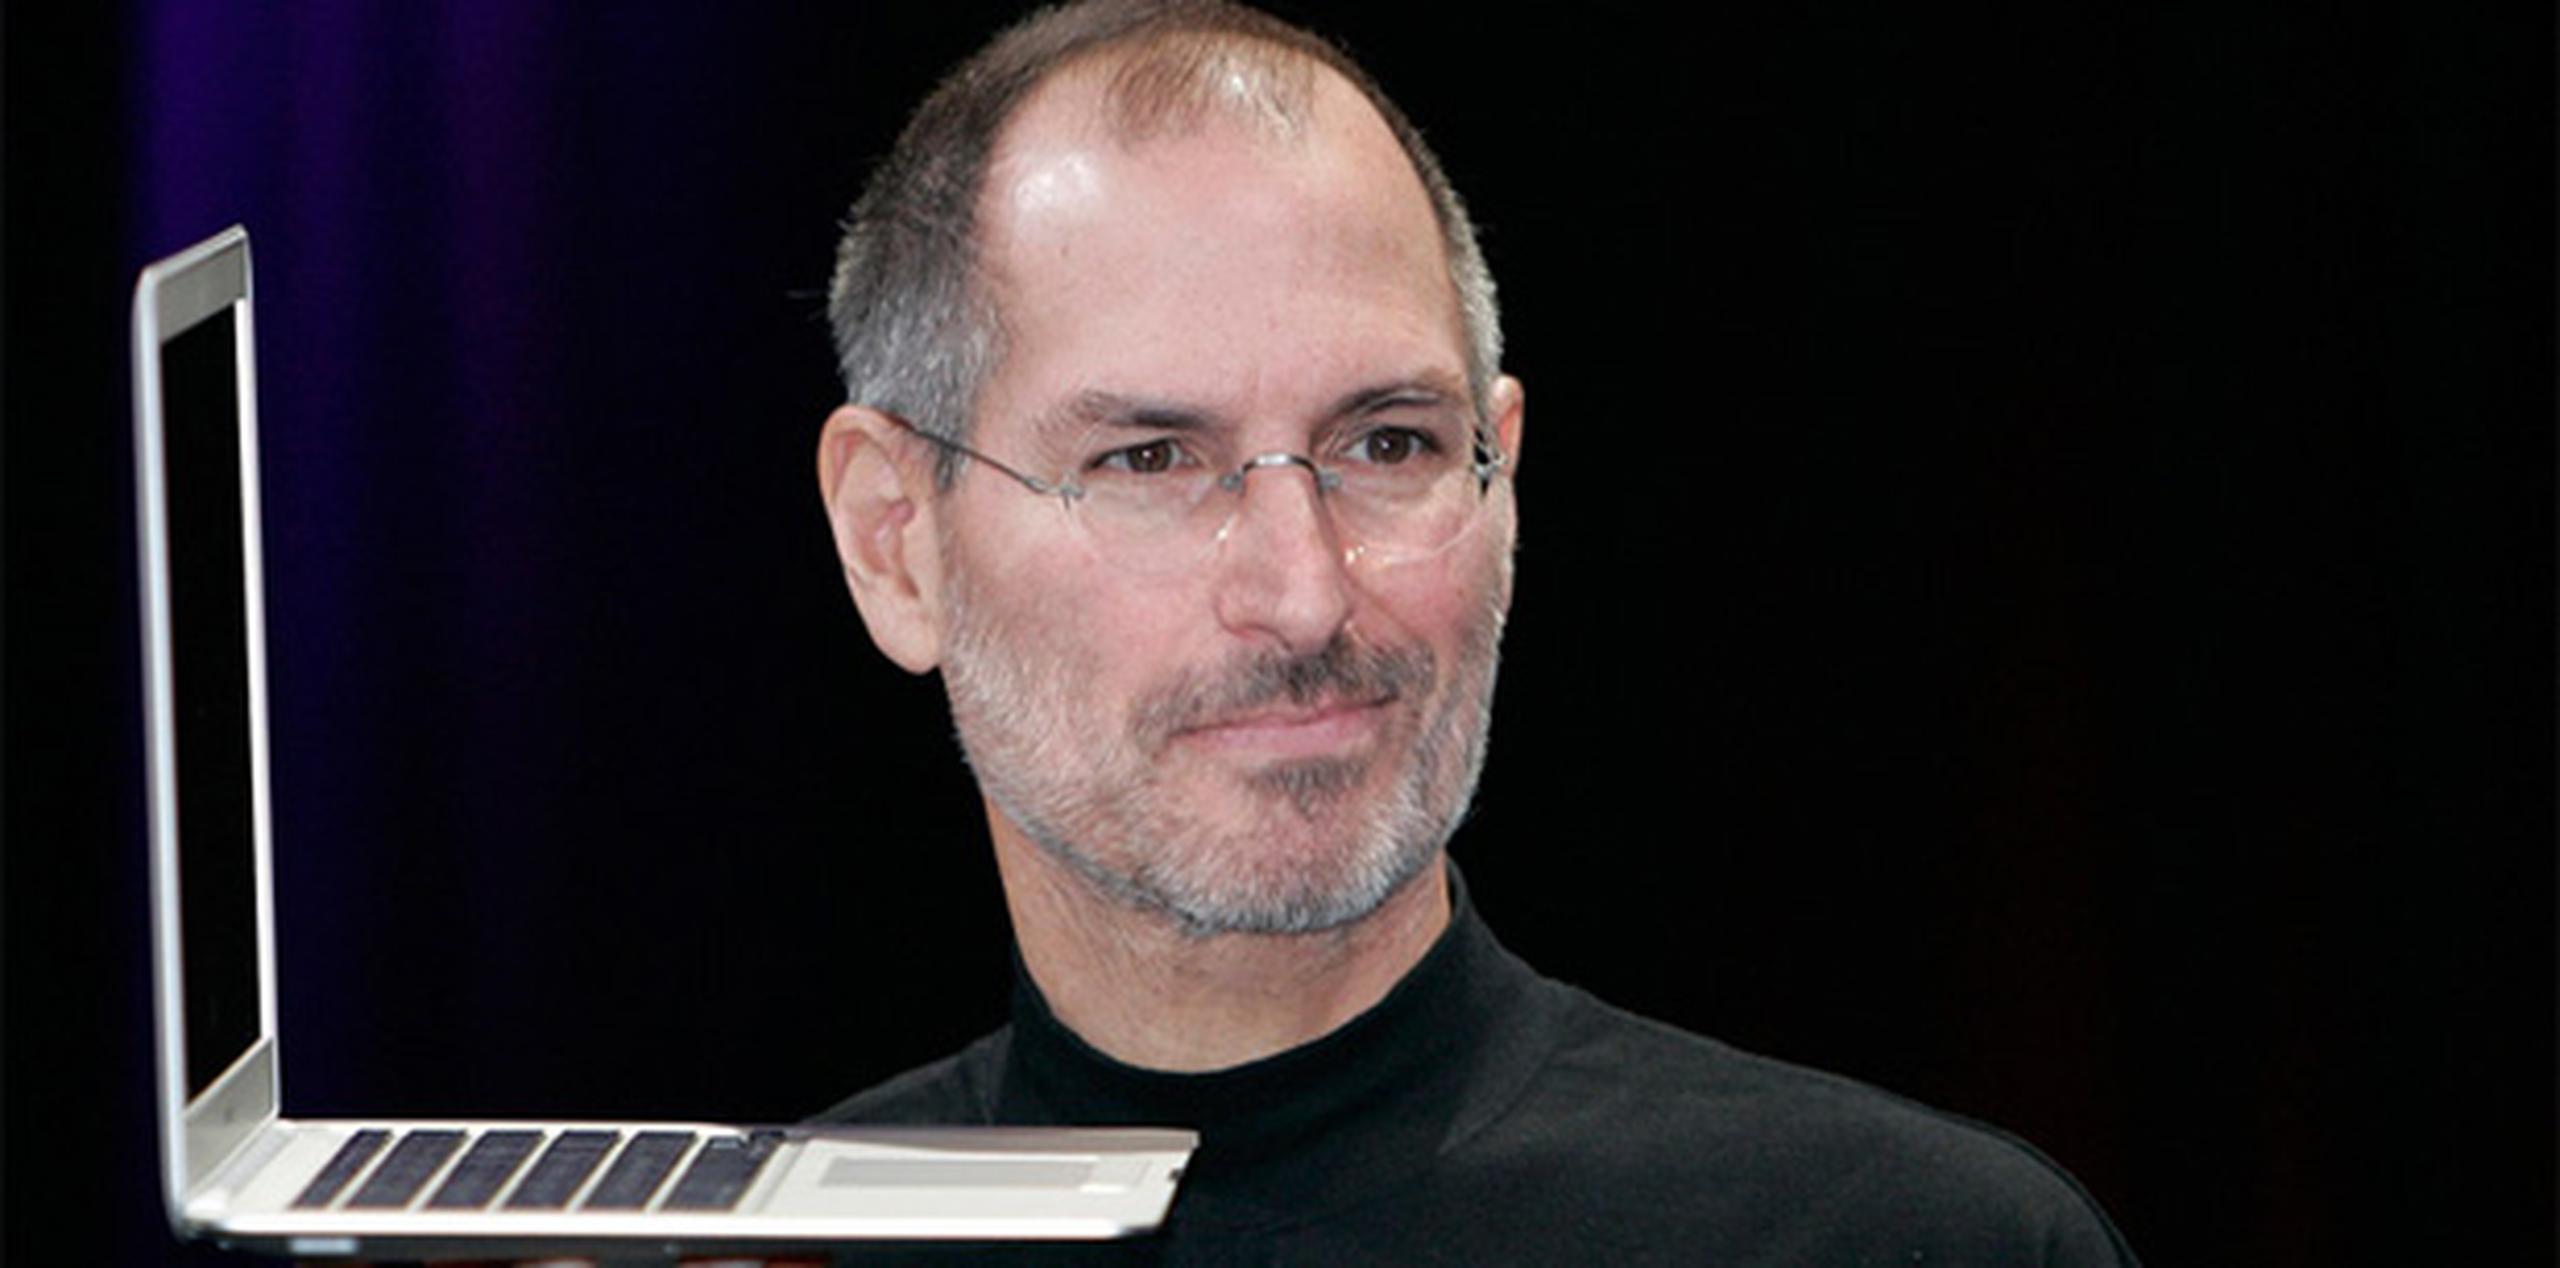 Steve Jobs falleció el 5 de octubre de 2011 por las complicaciones de un cáncer de páncreas que padecía desde hacía varios años. (Archivo)